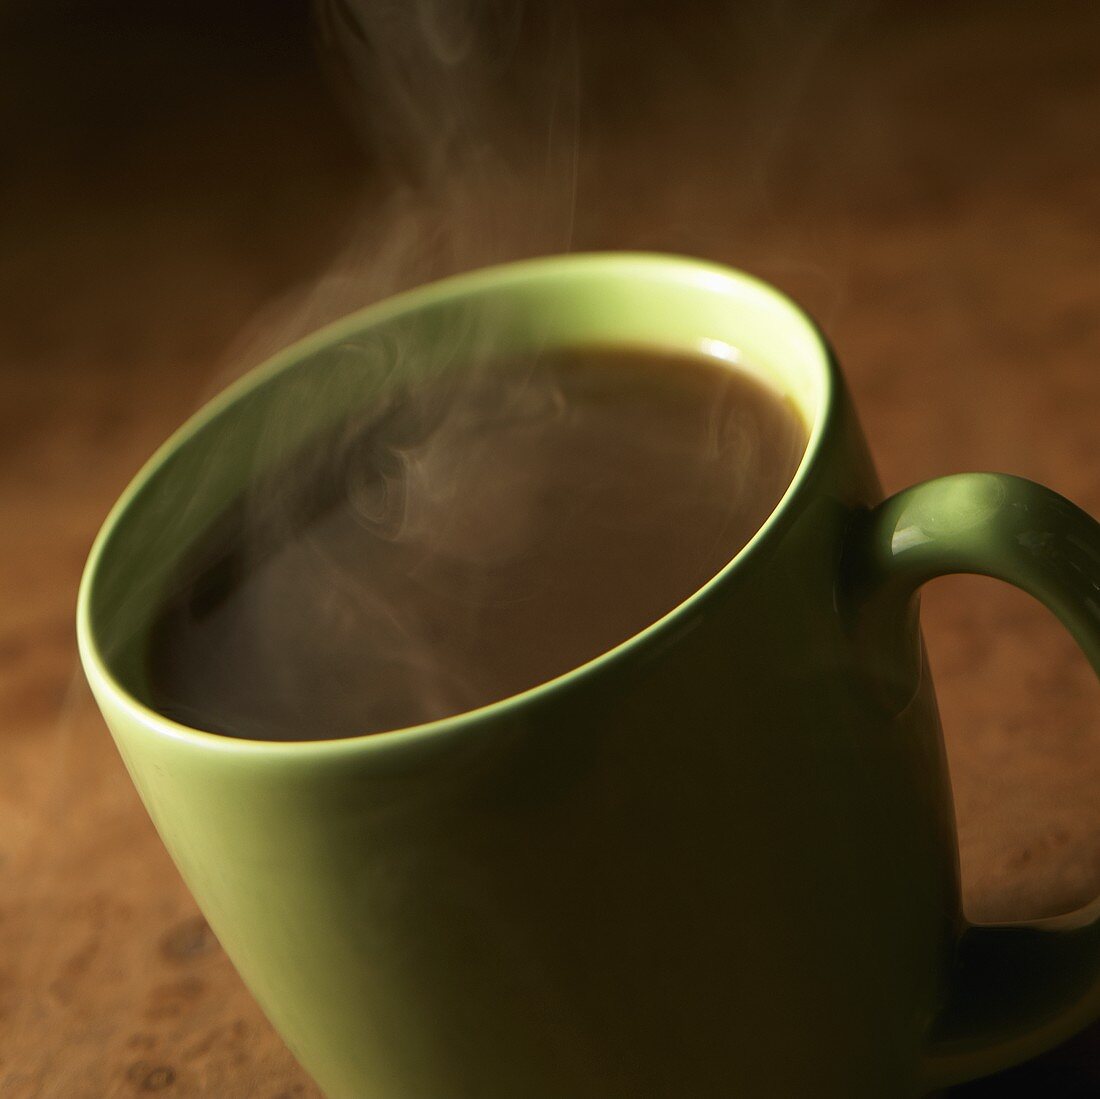 Steaming Black Coffee in a Green Mug